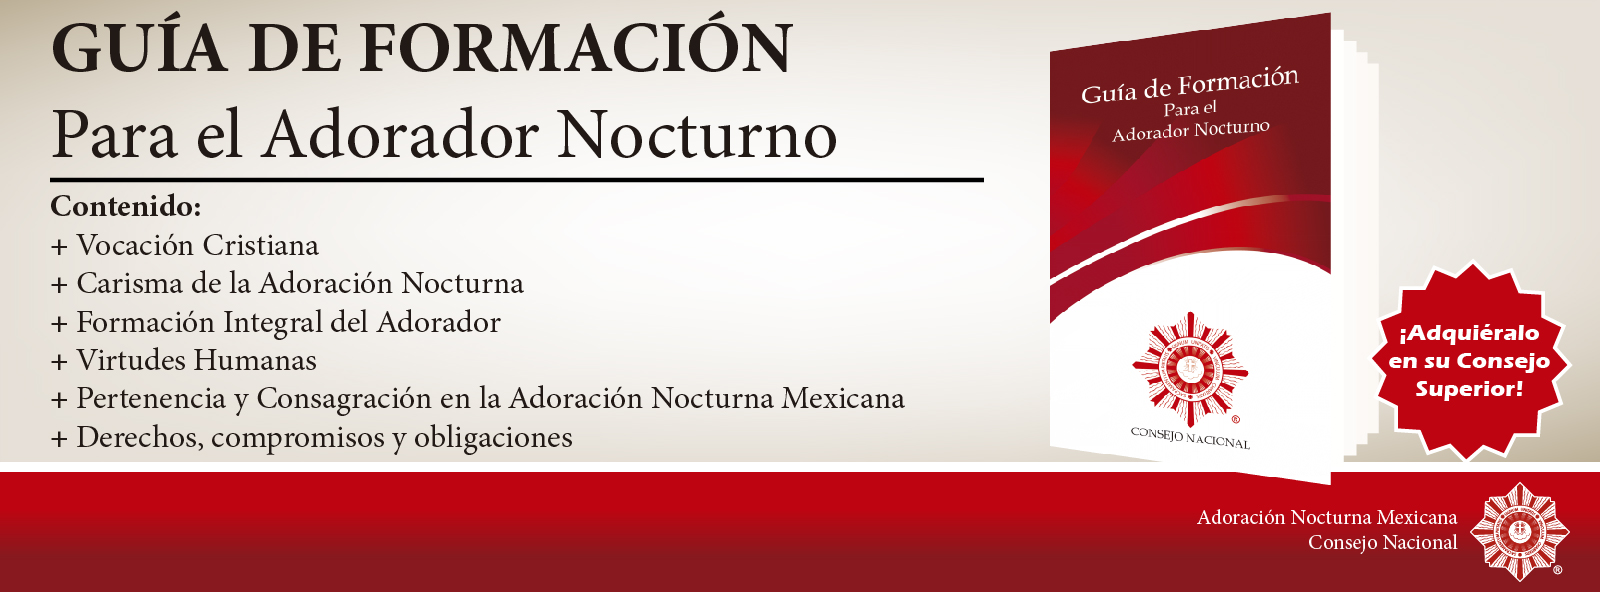 descargar ritual de la adoracion nocturna mexicana pdf